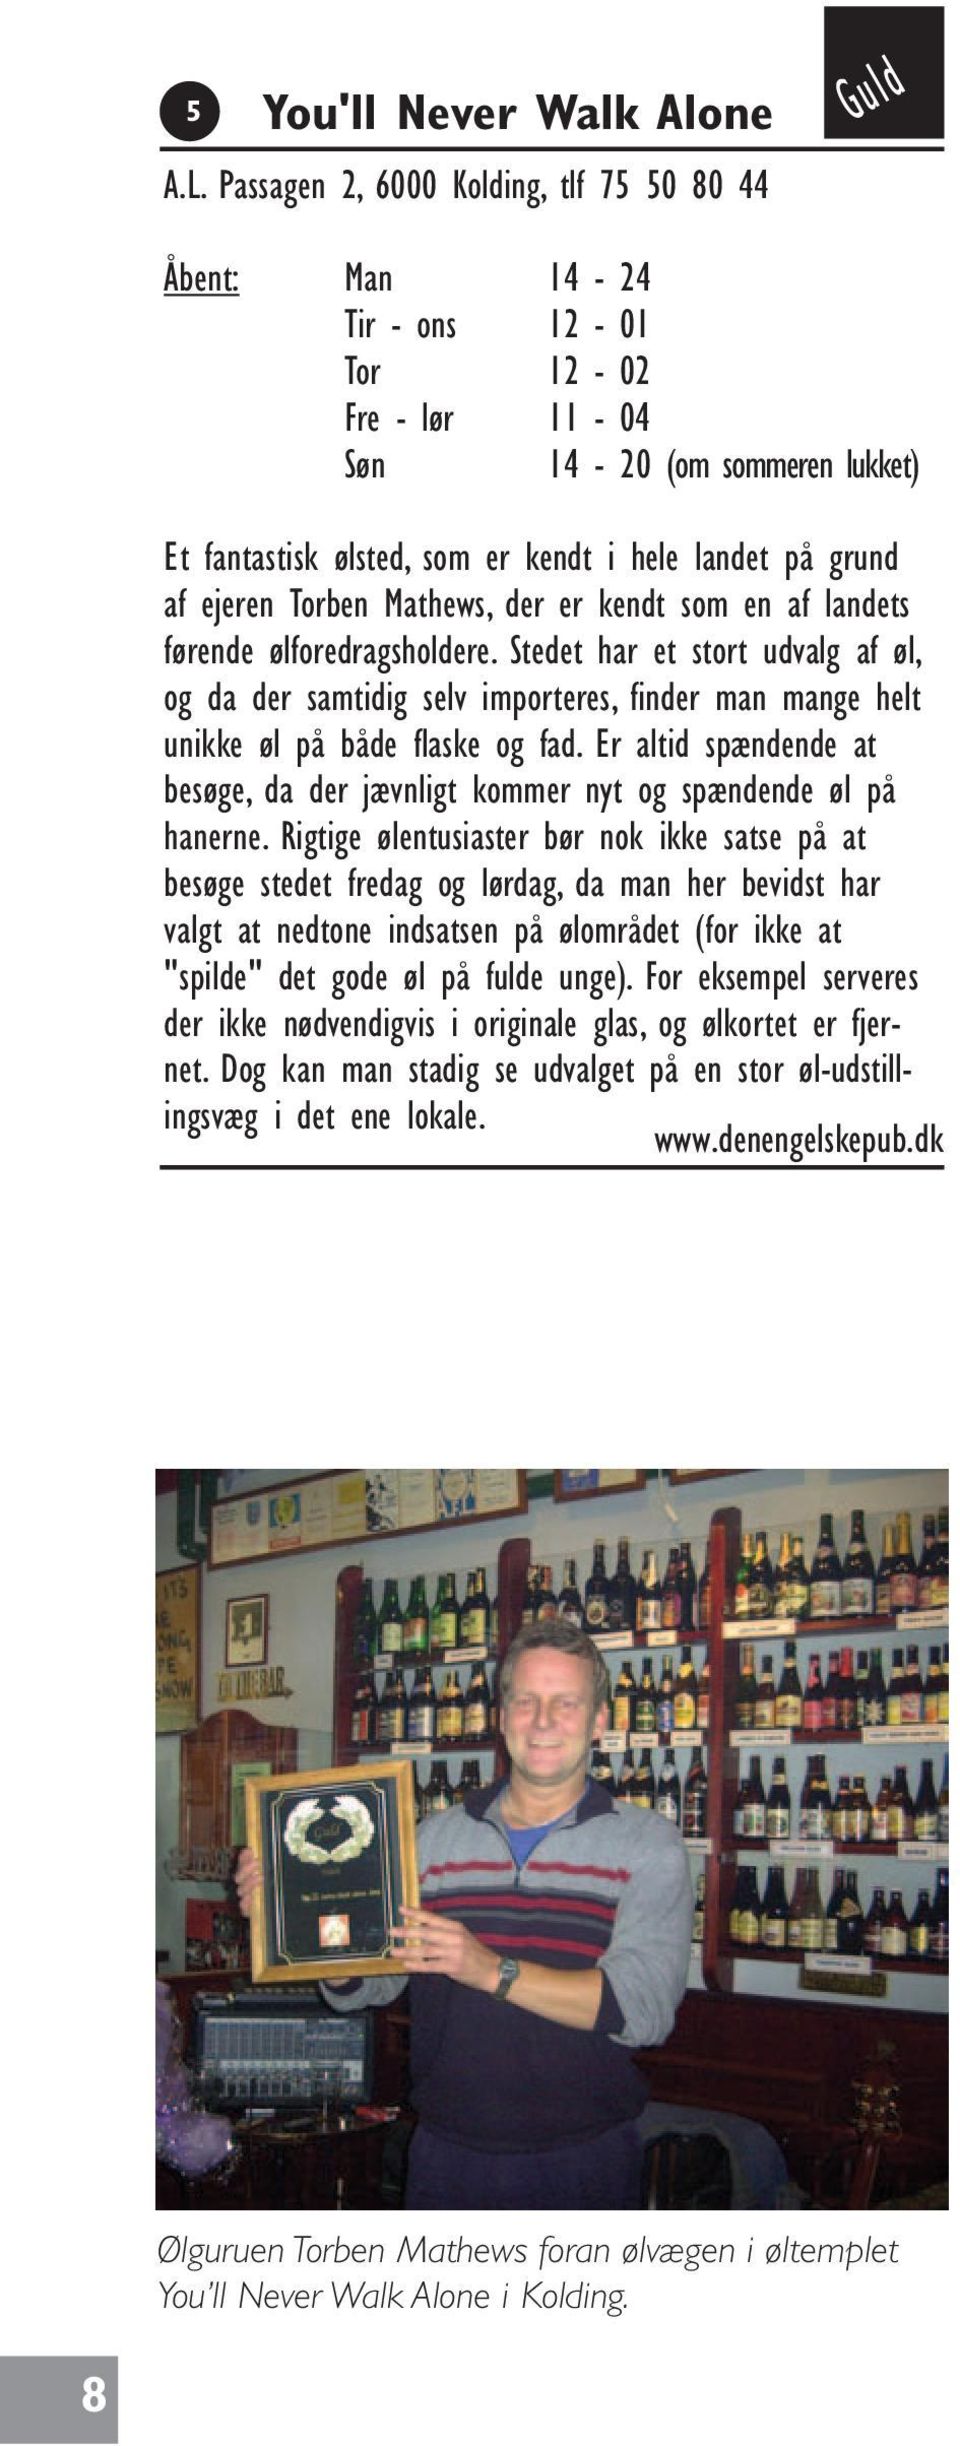 ejeren Torben Mathews, der er kendt som en af landets førende ølforedragsholdere.